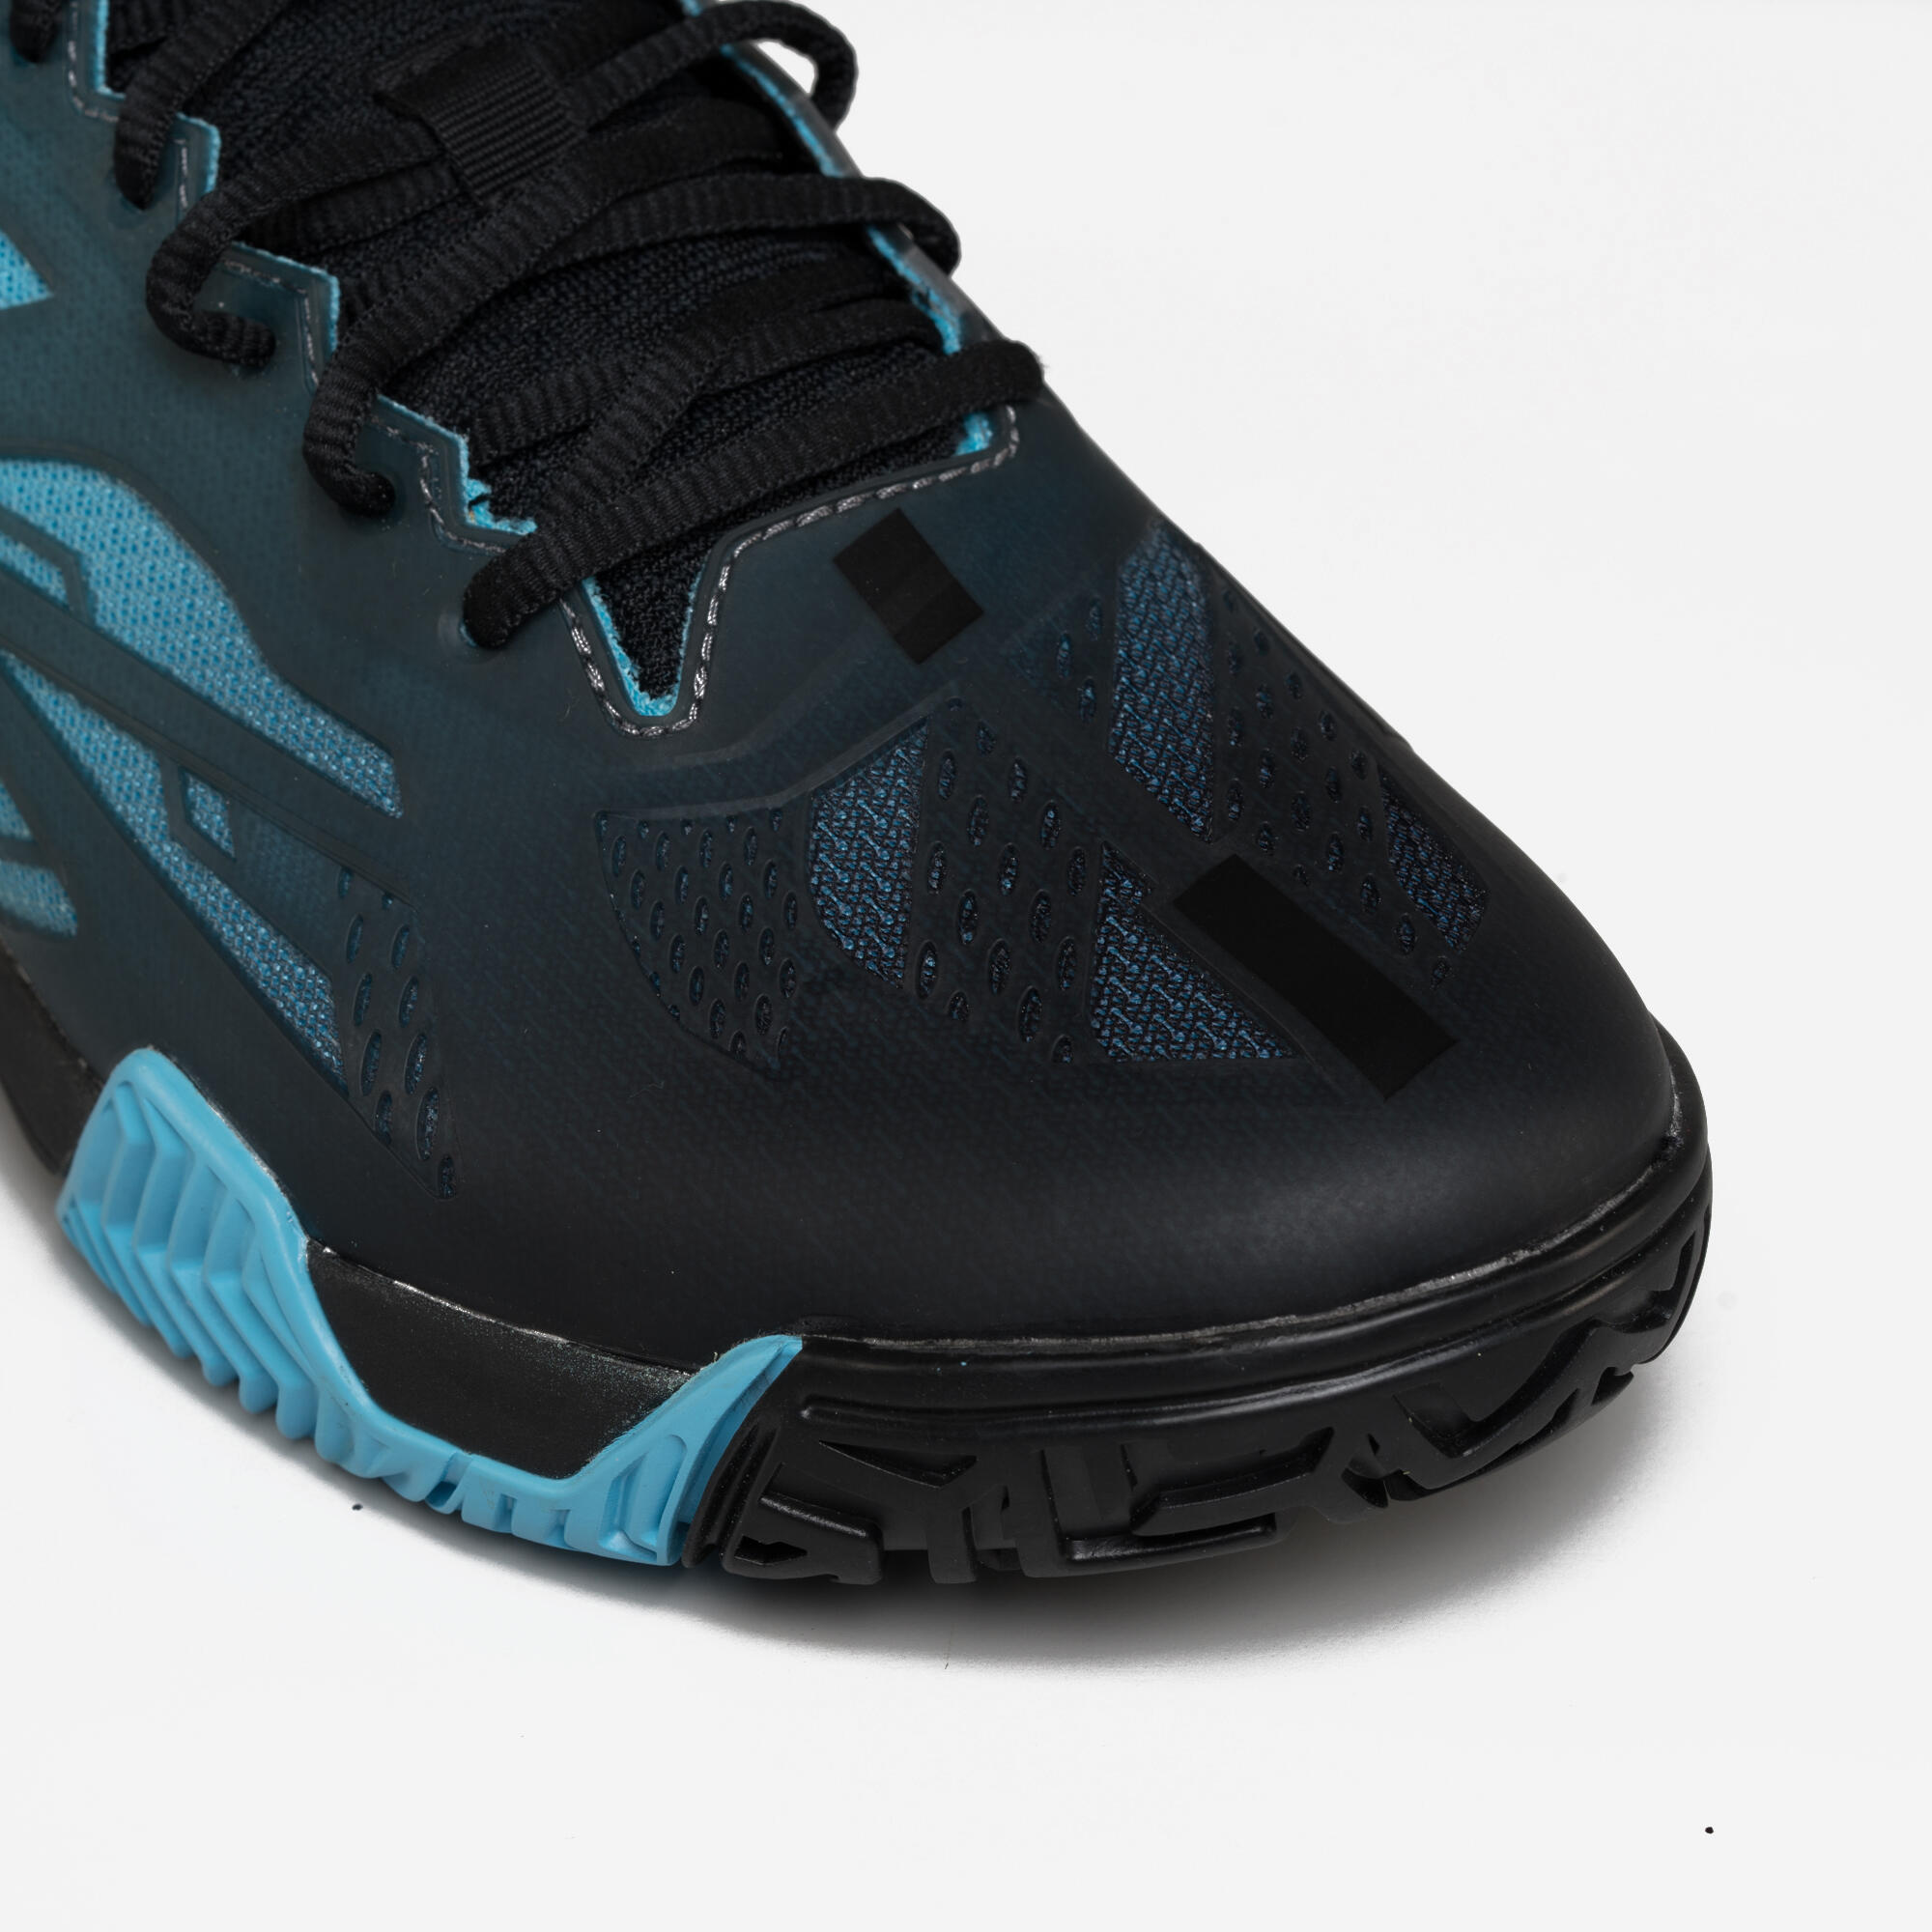 Men's Padel Shoes PS 990 Stability - Blue/Black 5/7